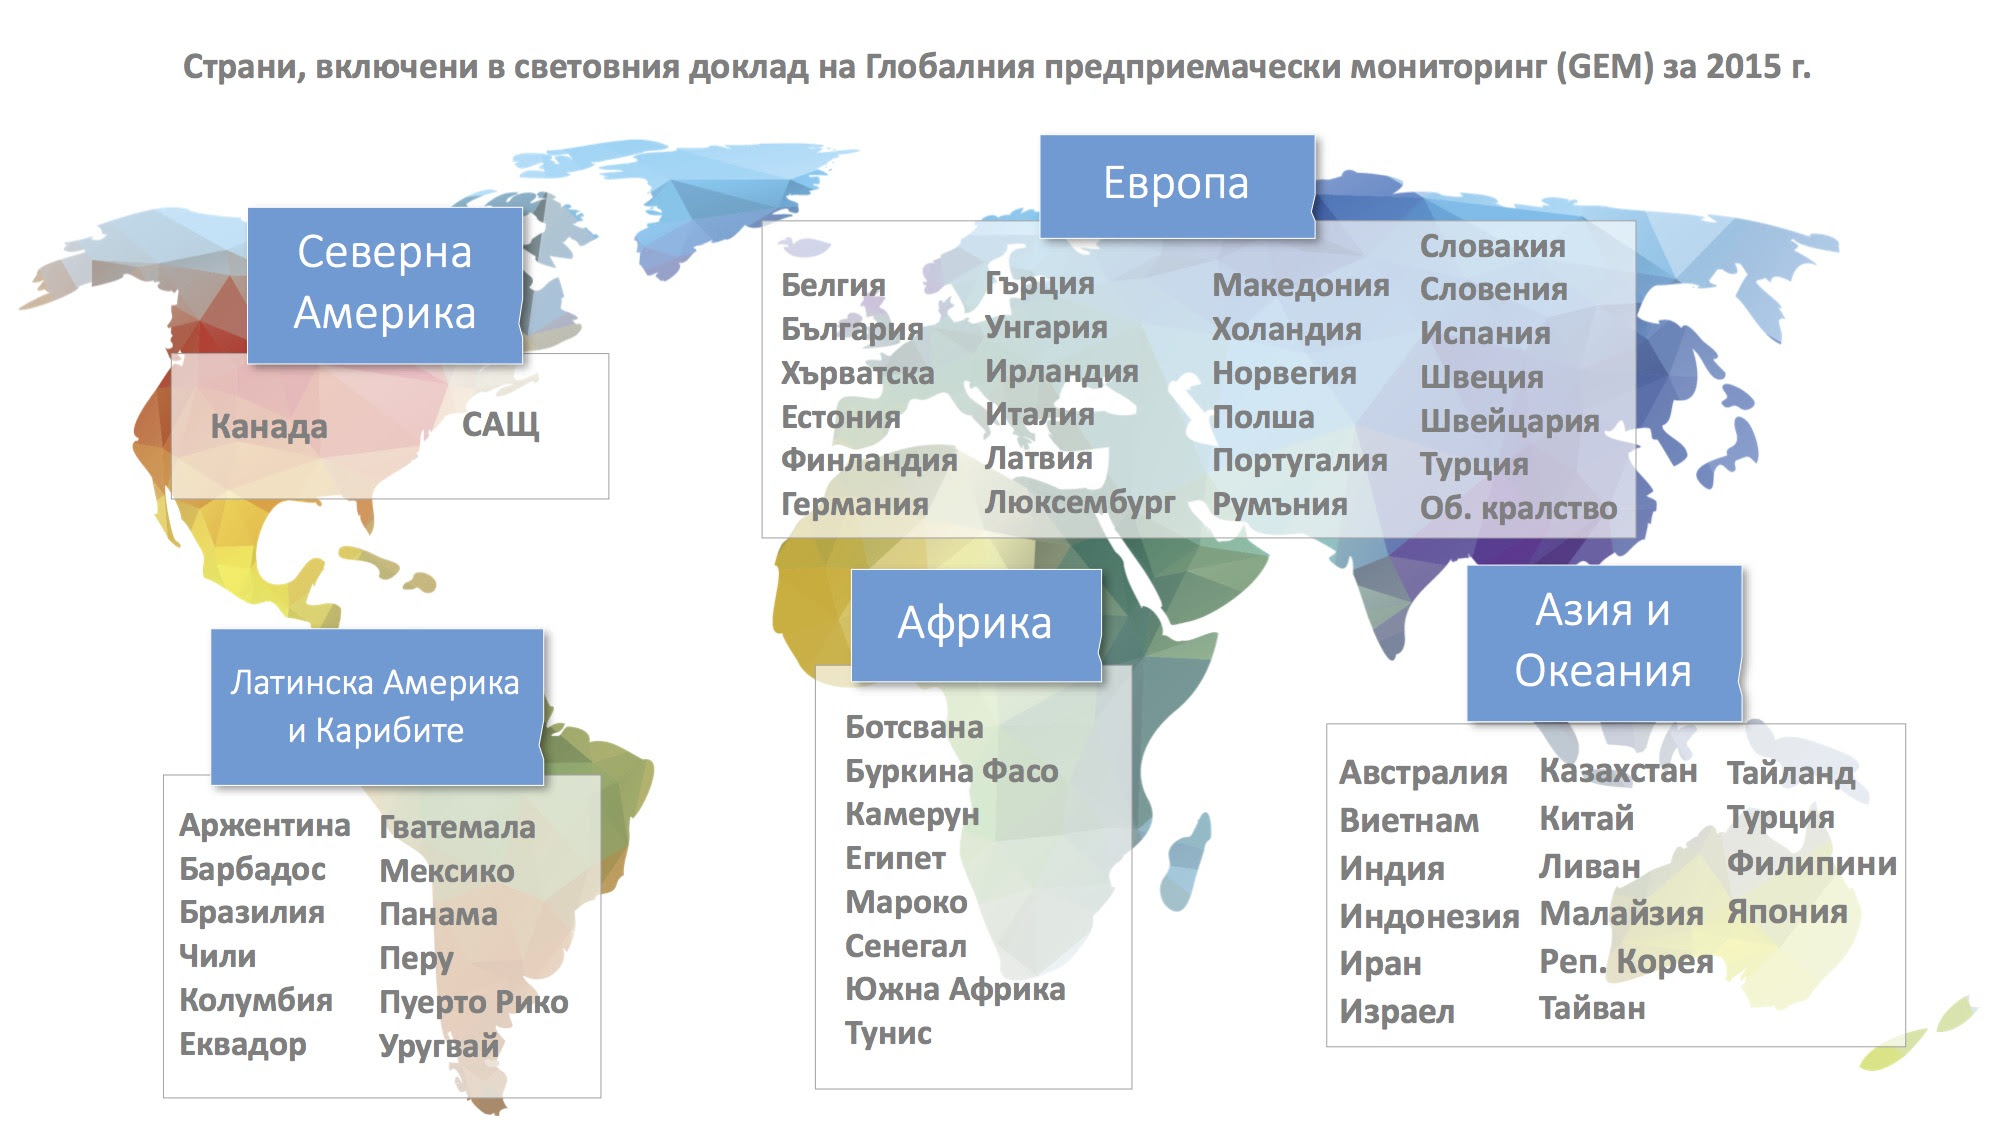 България присъства за
пръв път в глобалния
доклад на GEM - най-мащабното
и авторитетно проучване
на предприемачеството